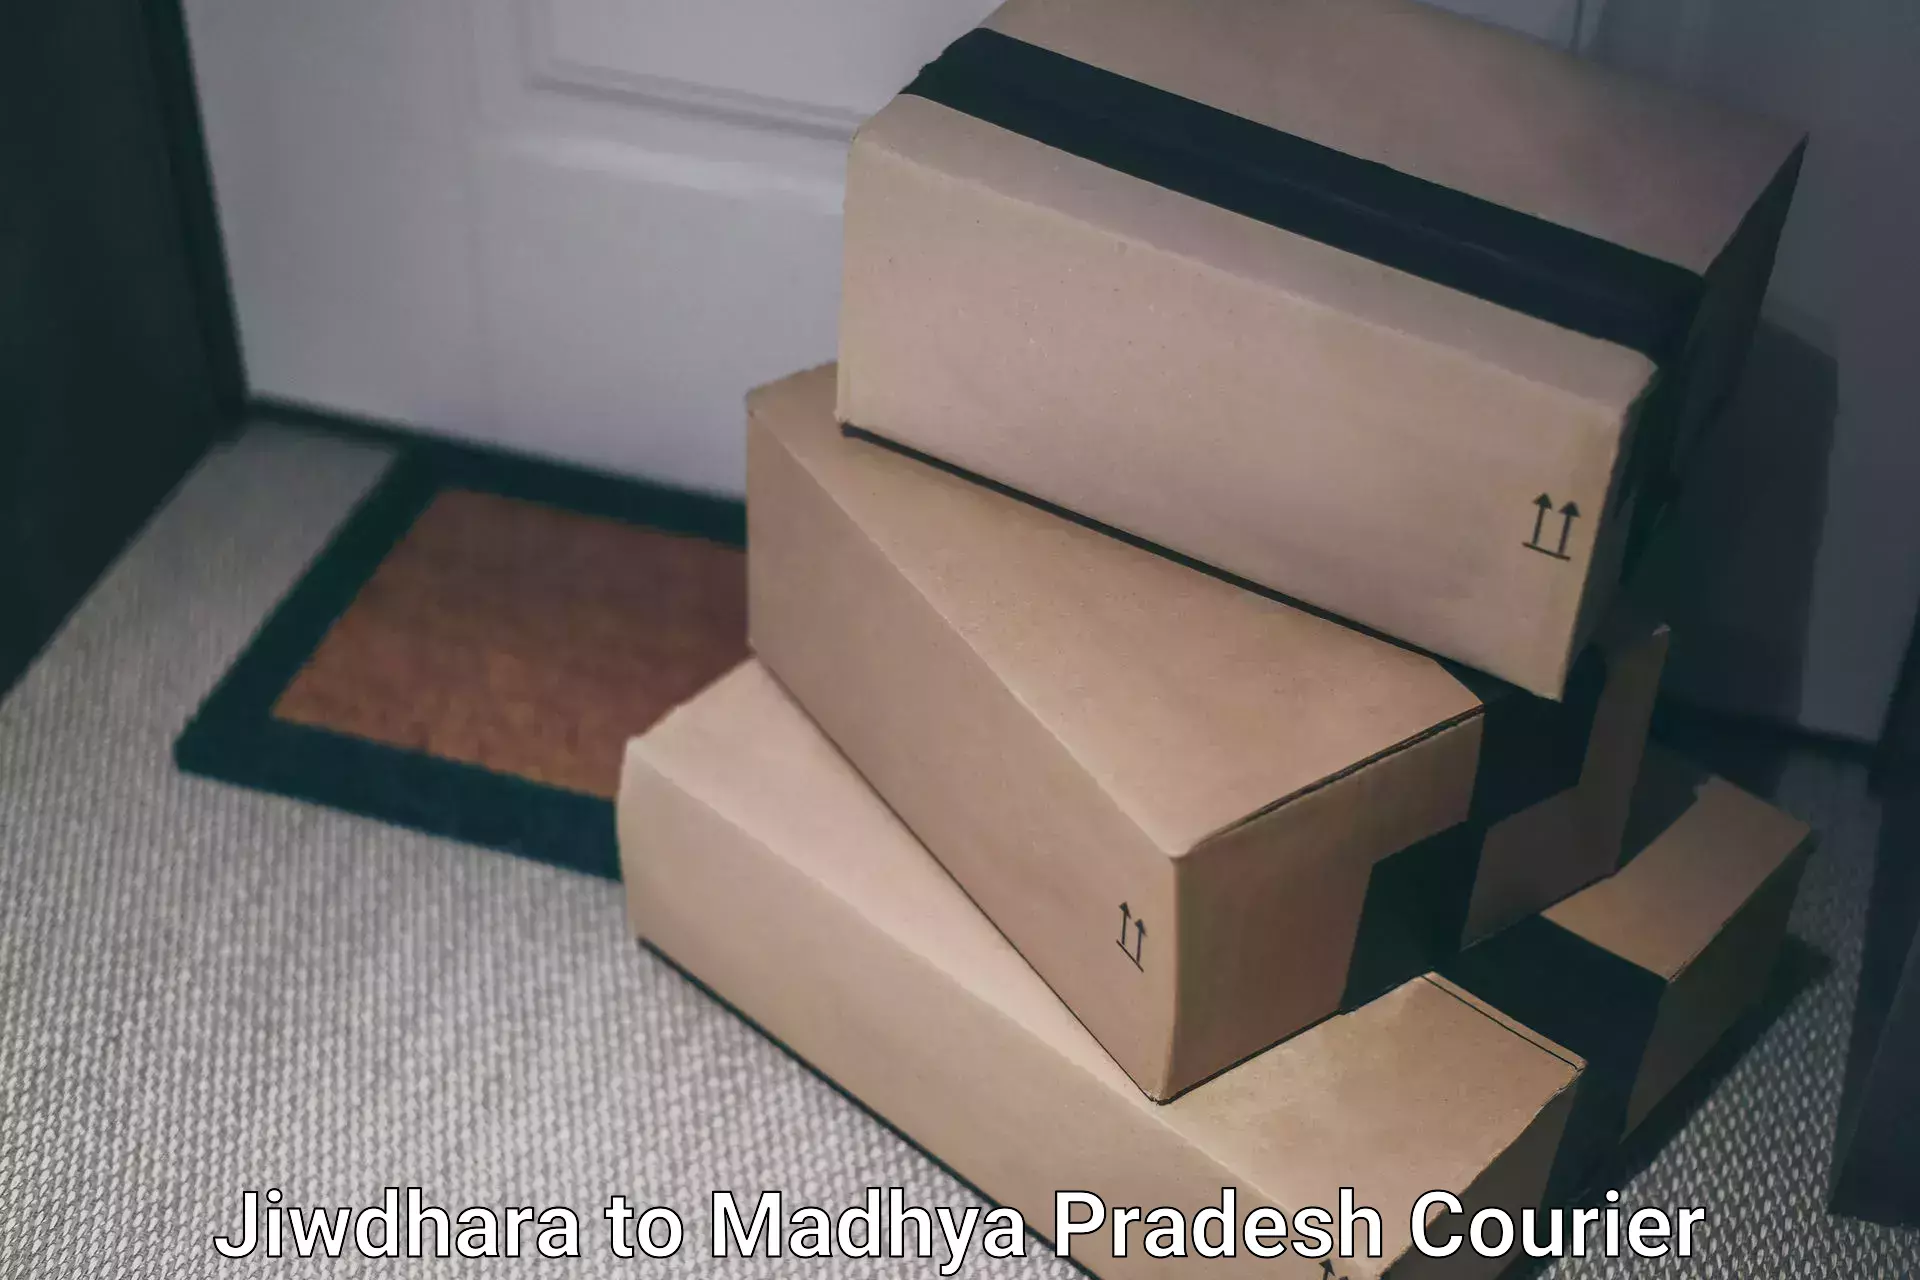 Premium courier services Jiwdhara to Nalkheda